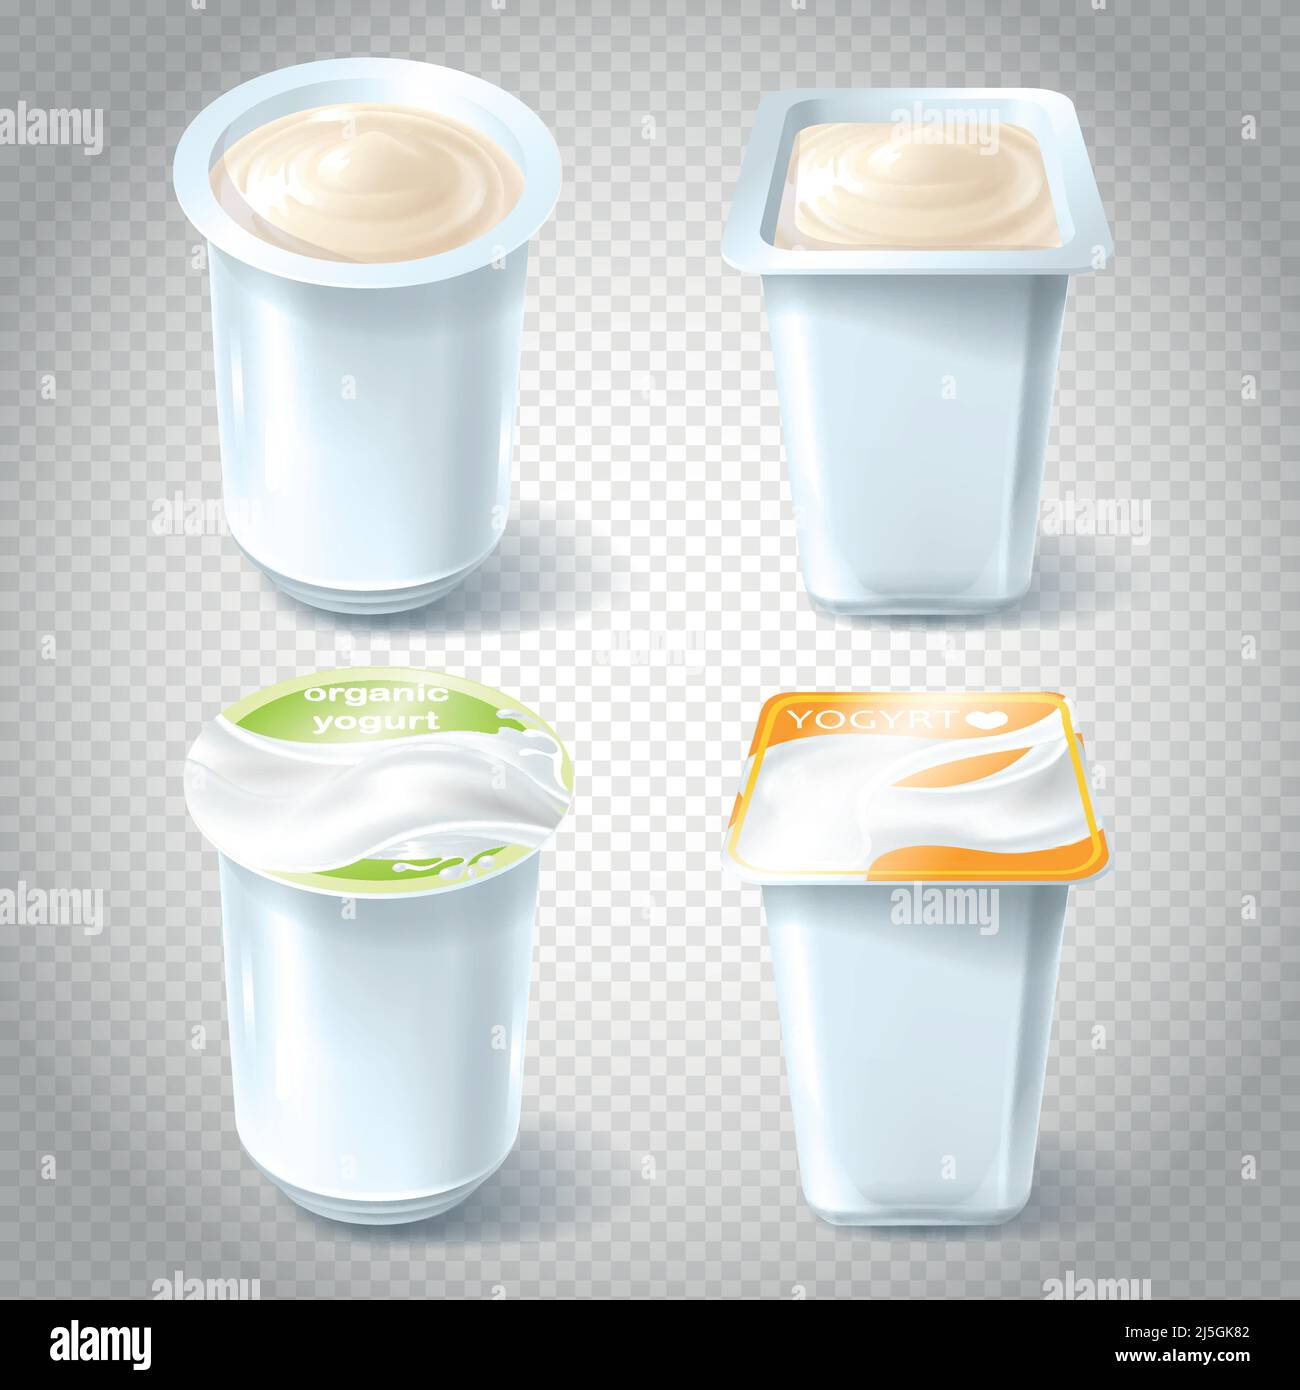 Un set di illustrazioni vettoriali di tazze di plastica per il confezionamento, la conservazione, la vendita di yogurt. Modello, elemento per la progettazione. Illustrazione Vettoriale